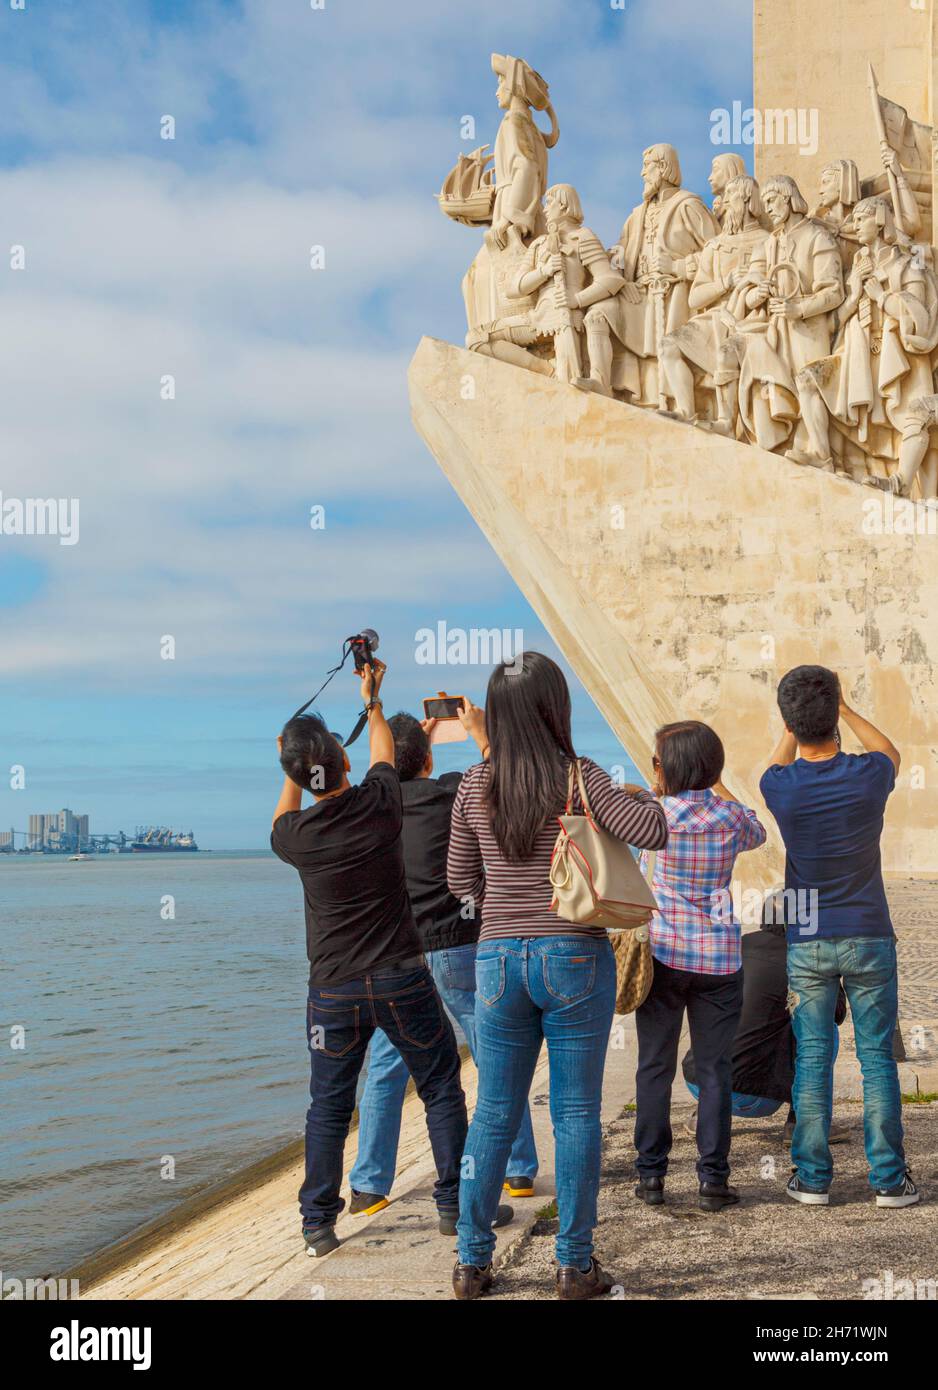 Lissabon, Portugal. Touristen fotografieren das Padrao dos Descobrimentos oder Monument für die Entdeckungen, das an den 500th. Jahrestag des Th erinnert Stockfoto